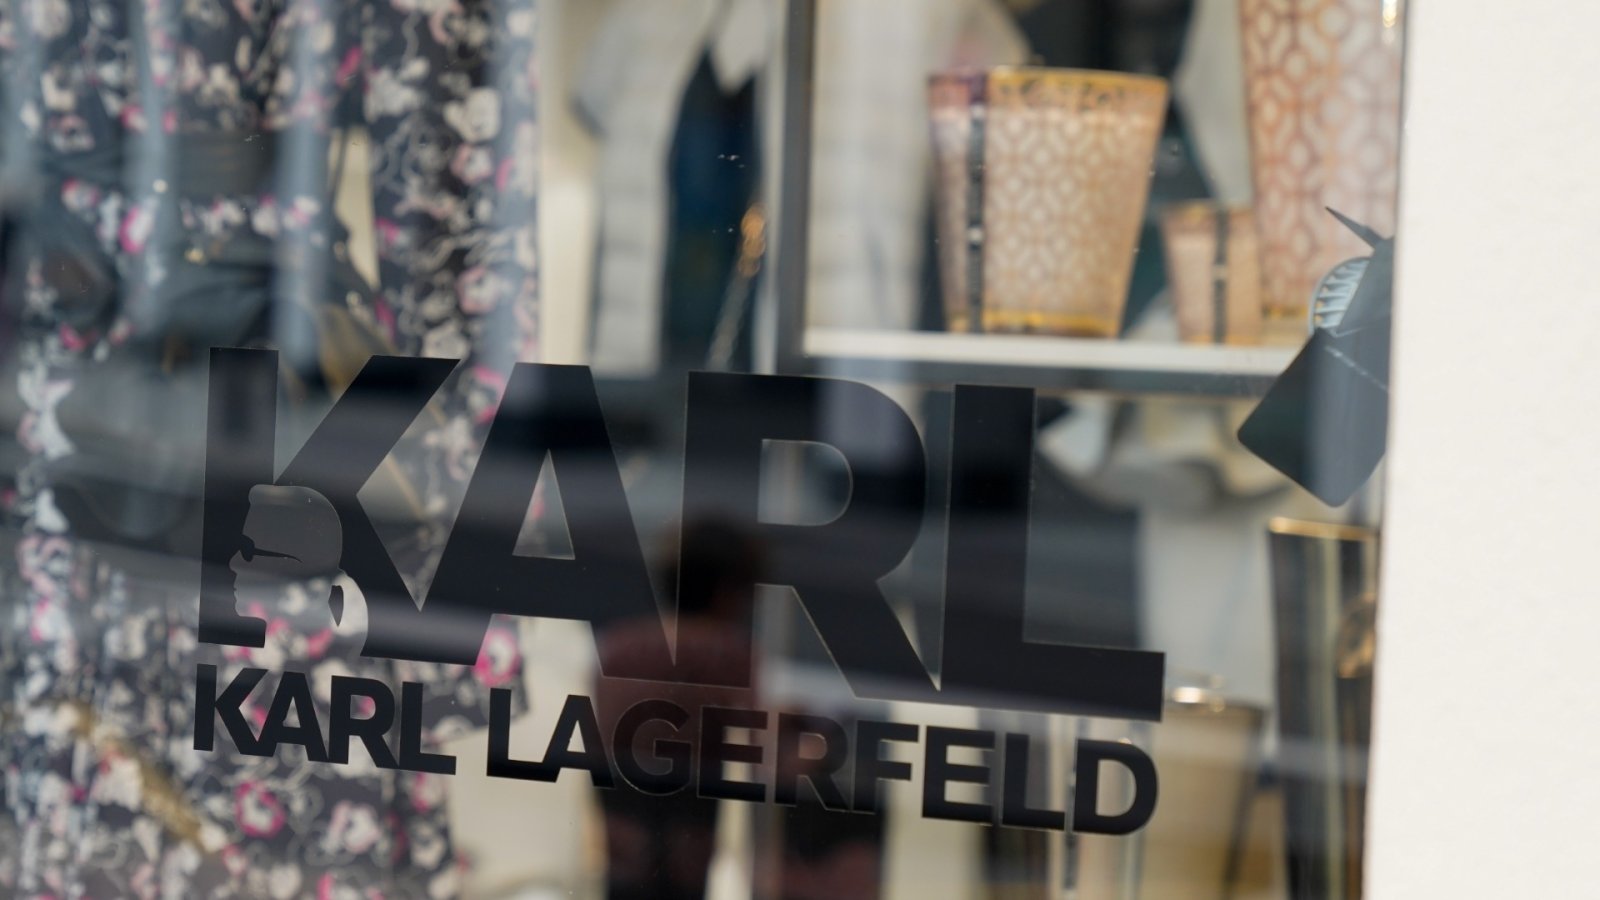 Wystawa Karla Lagerfelda w Met ukazuje niezwykłą wizję projektanta